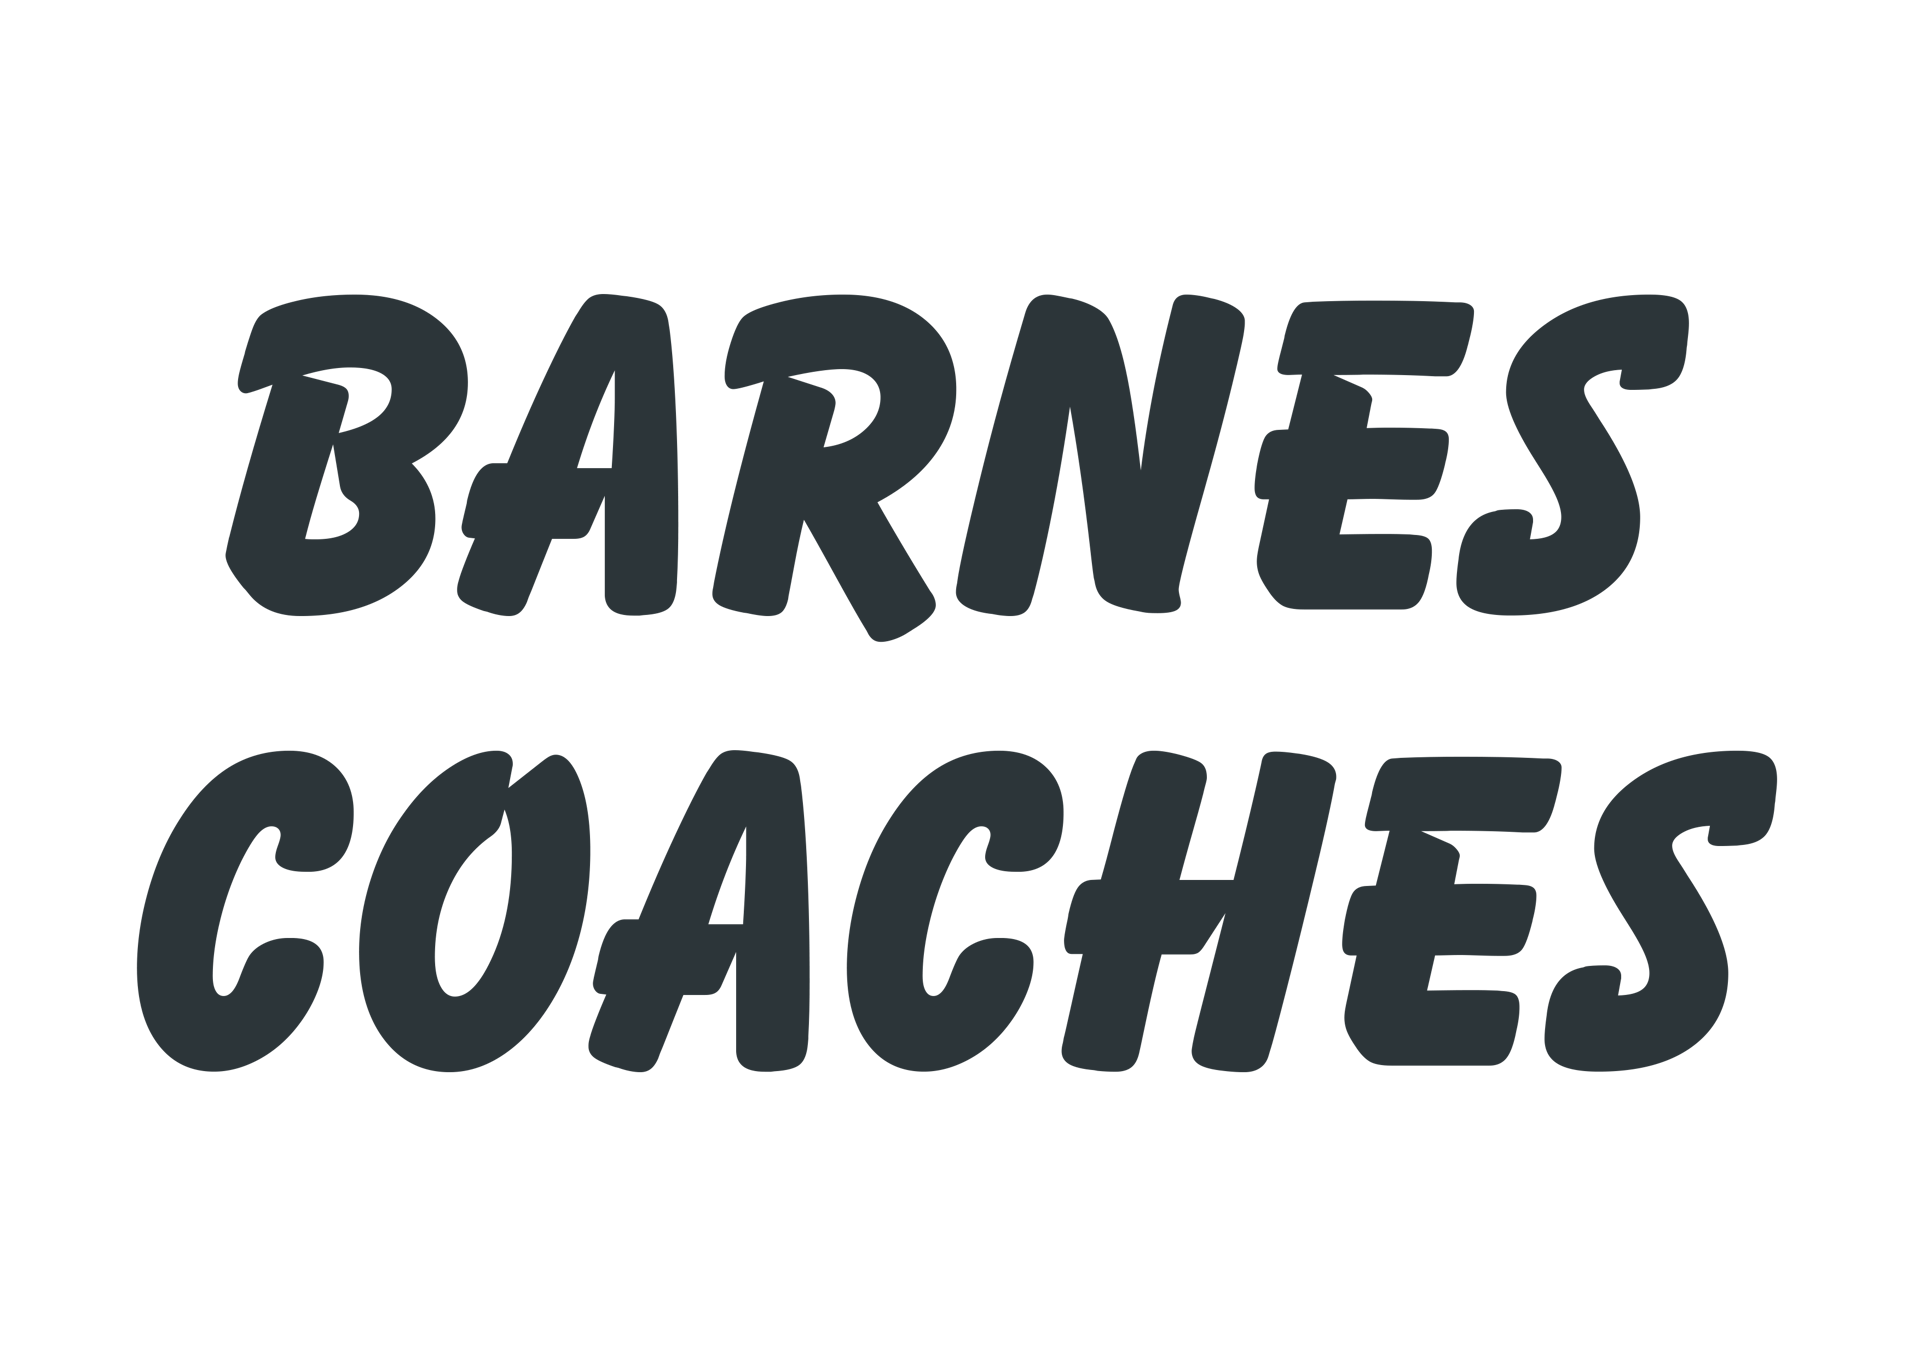 A logo for Barnes Coaches